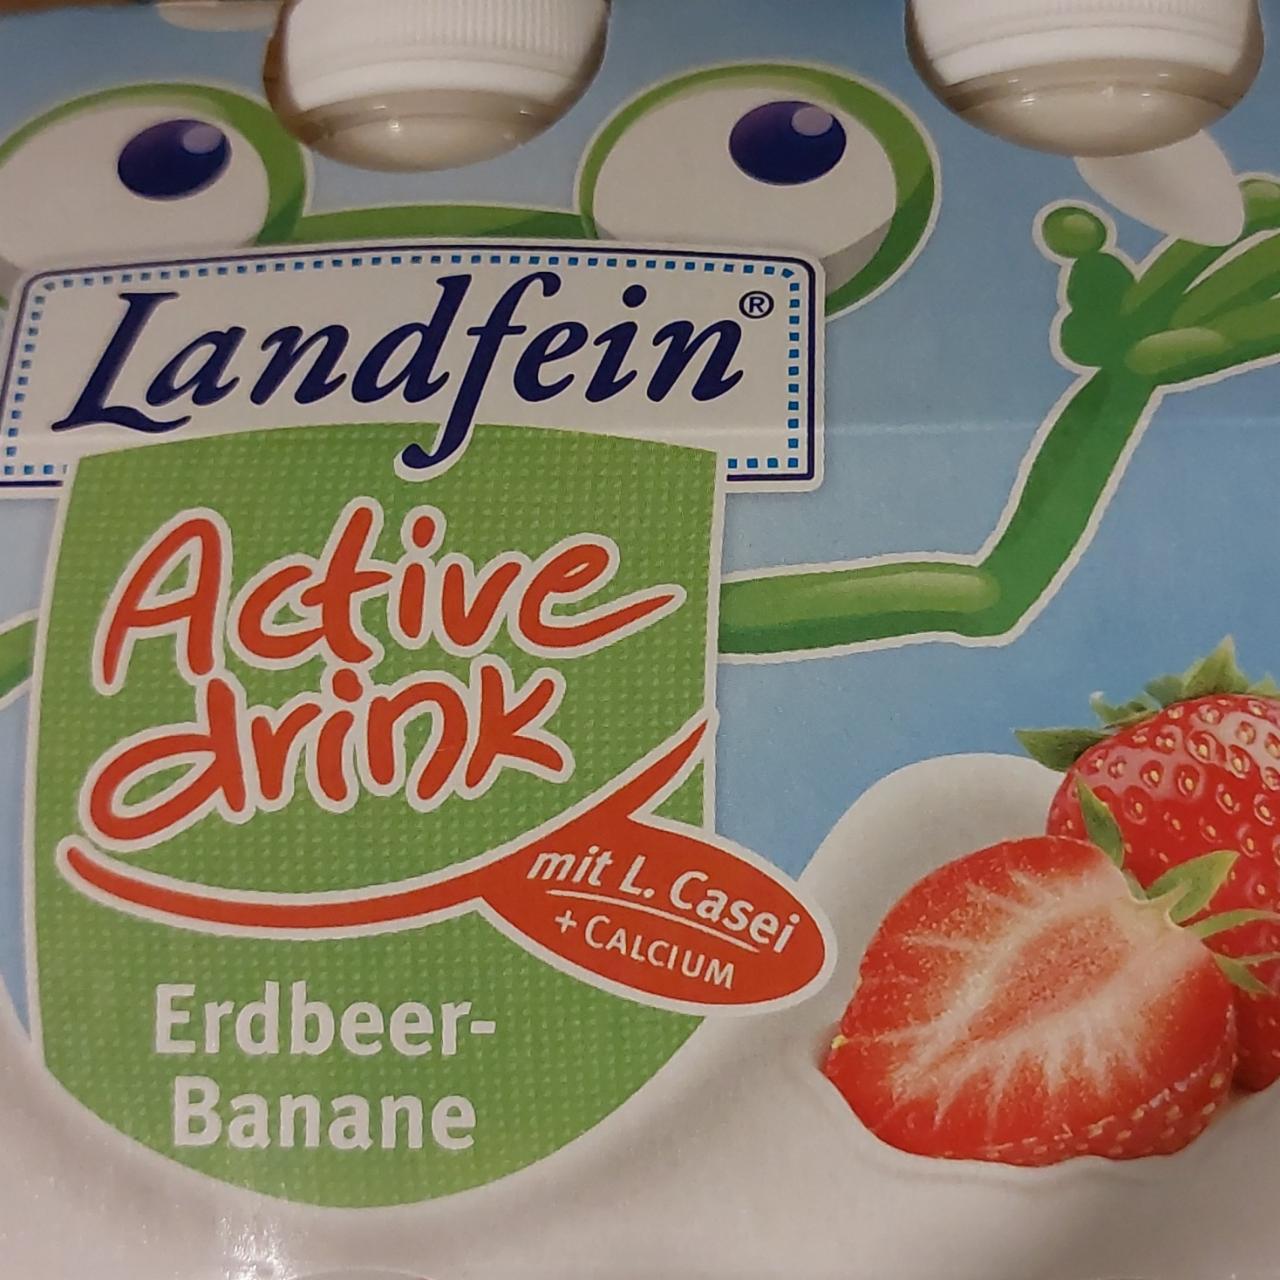 Fotografie - Active drink erdbeer banane Landfein